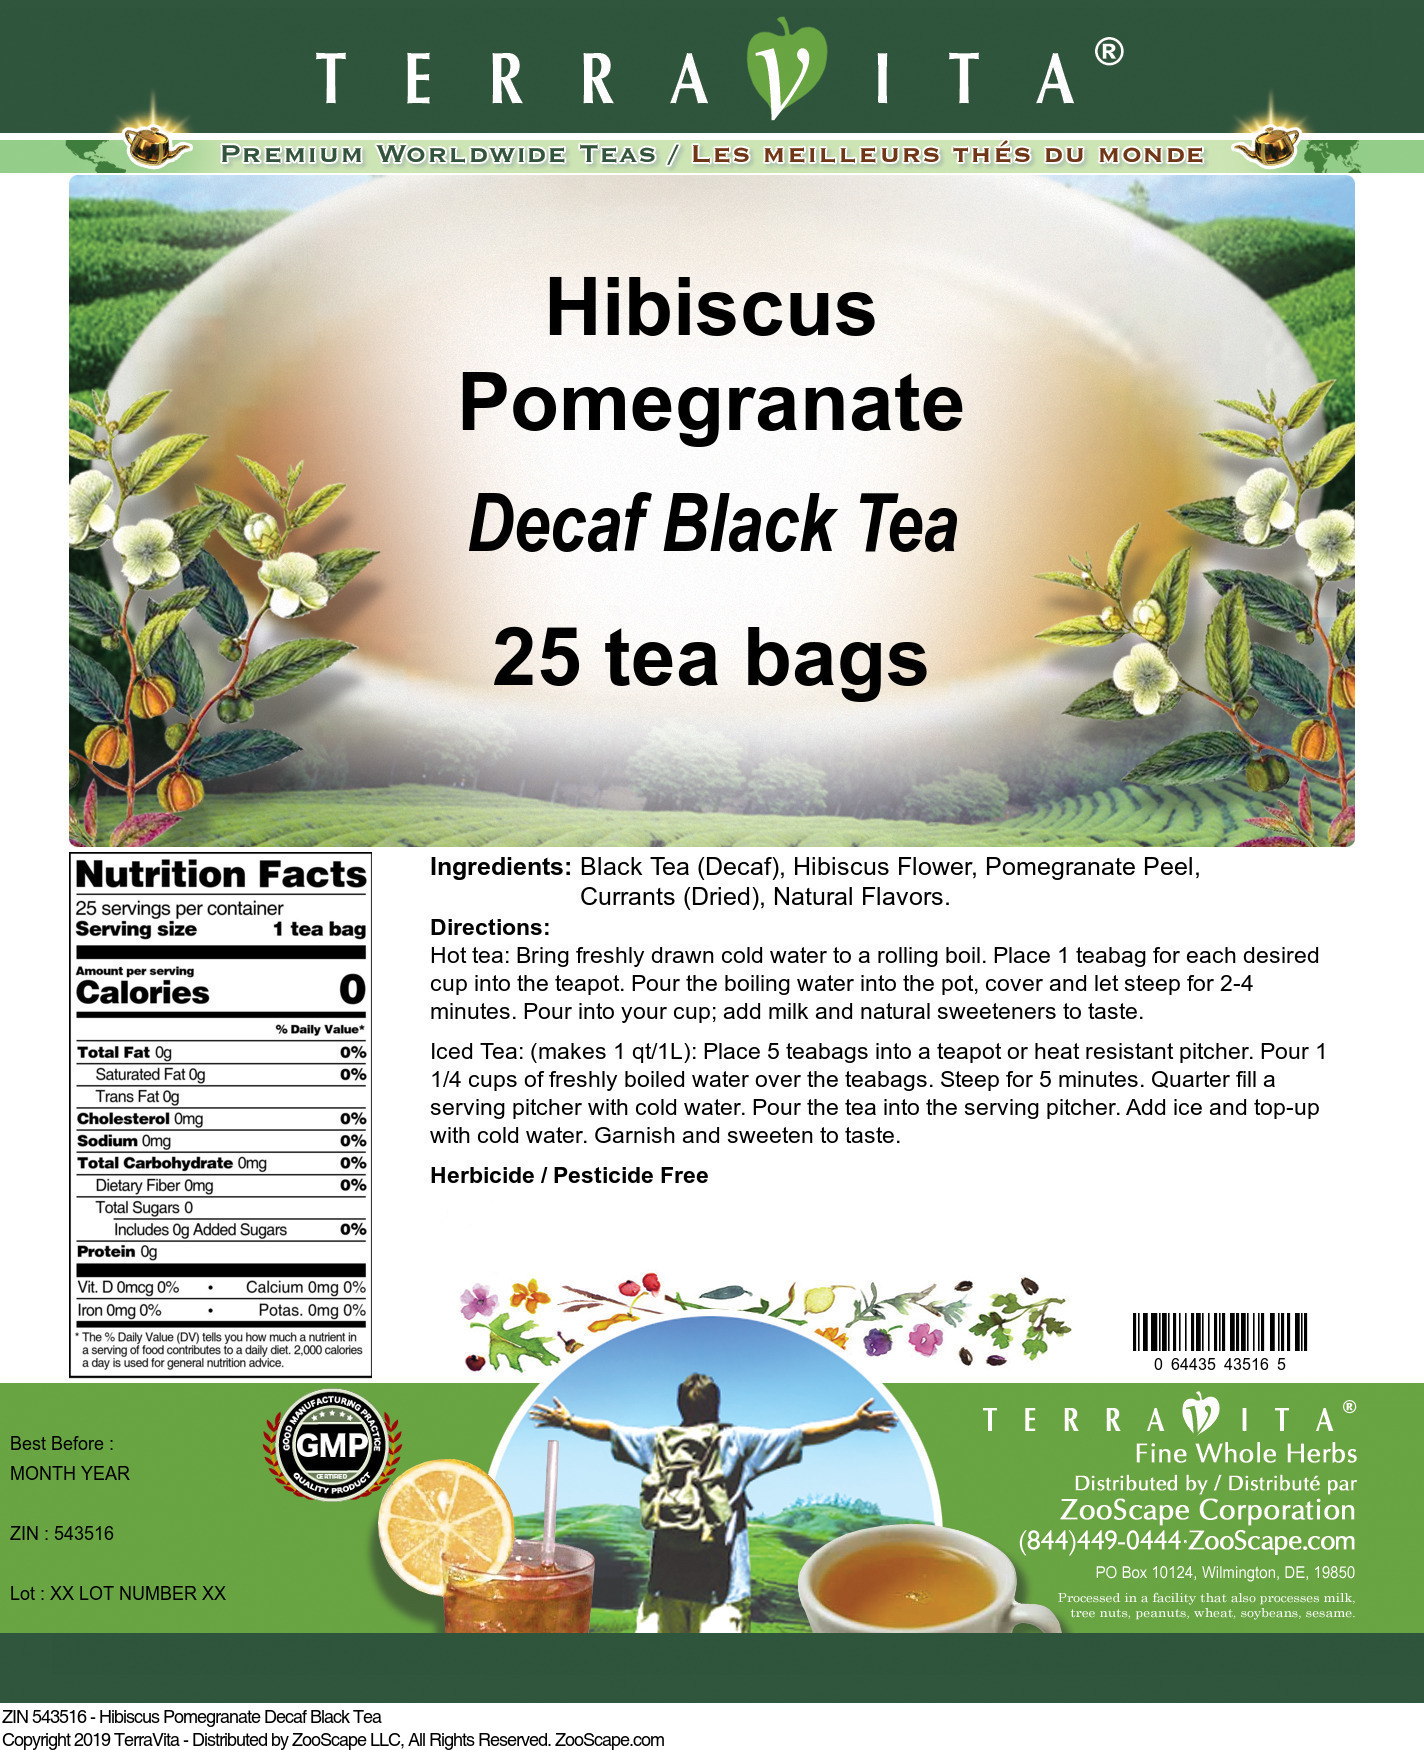 Hibiscus Pomegranate Decaf Black Tea - Label